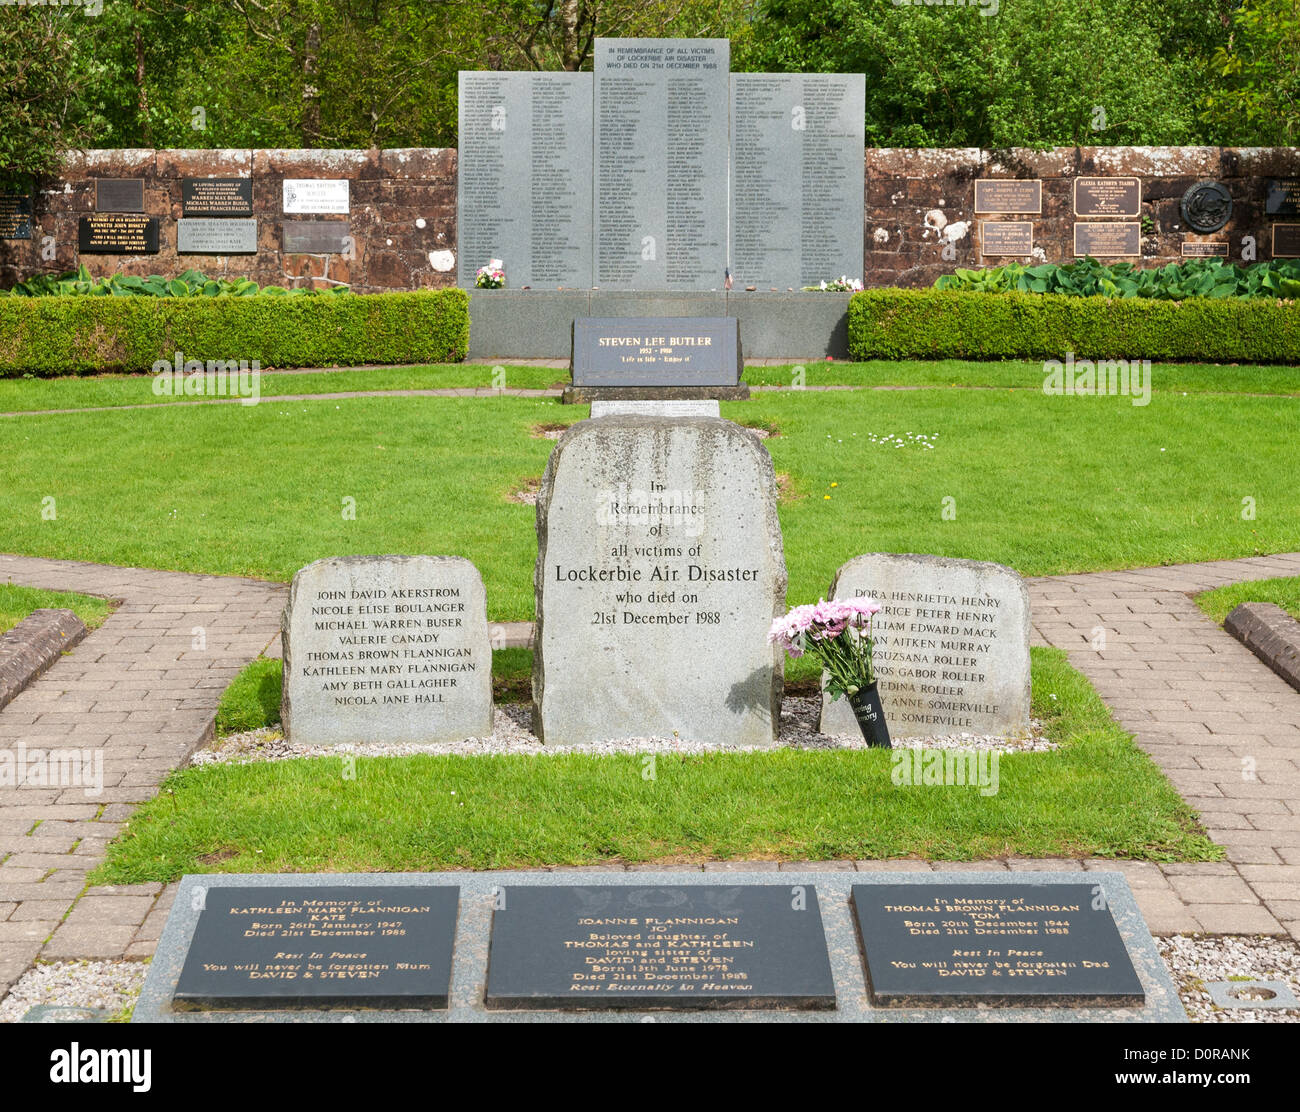 Lockerbie, Schottland Garten der Erinnerung an die Opfer von 1988 Flugzeugkatastrophe, die terroristischen Bombenanschlag von Pan Am Flug 103 Stockfoto